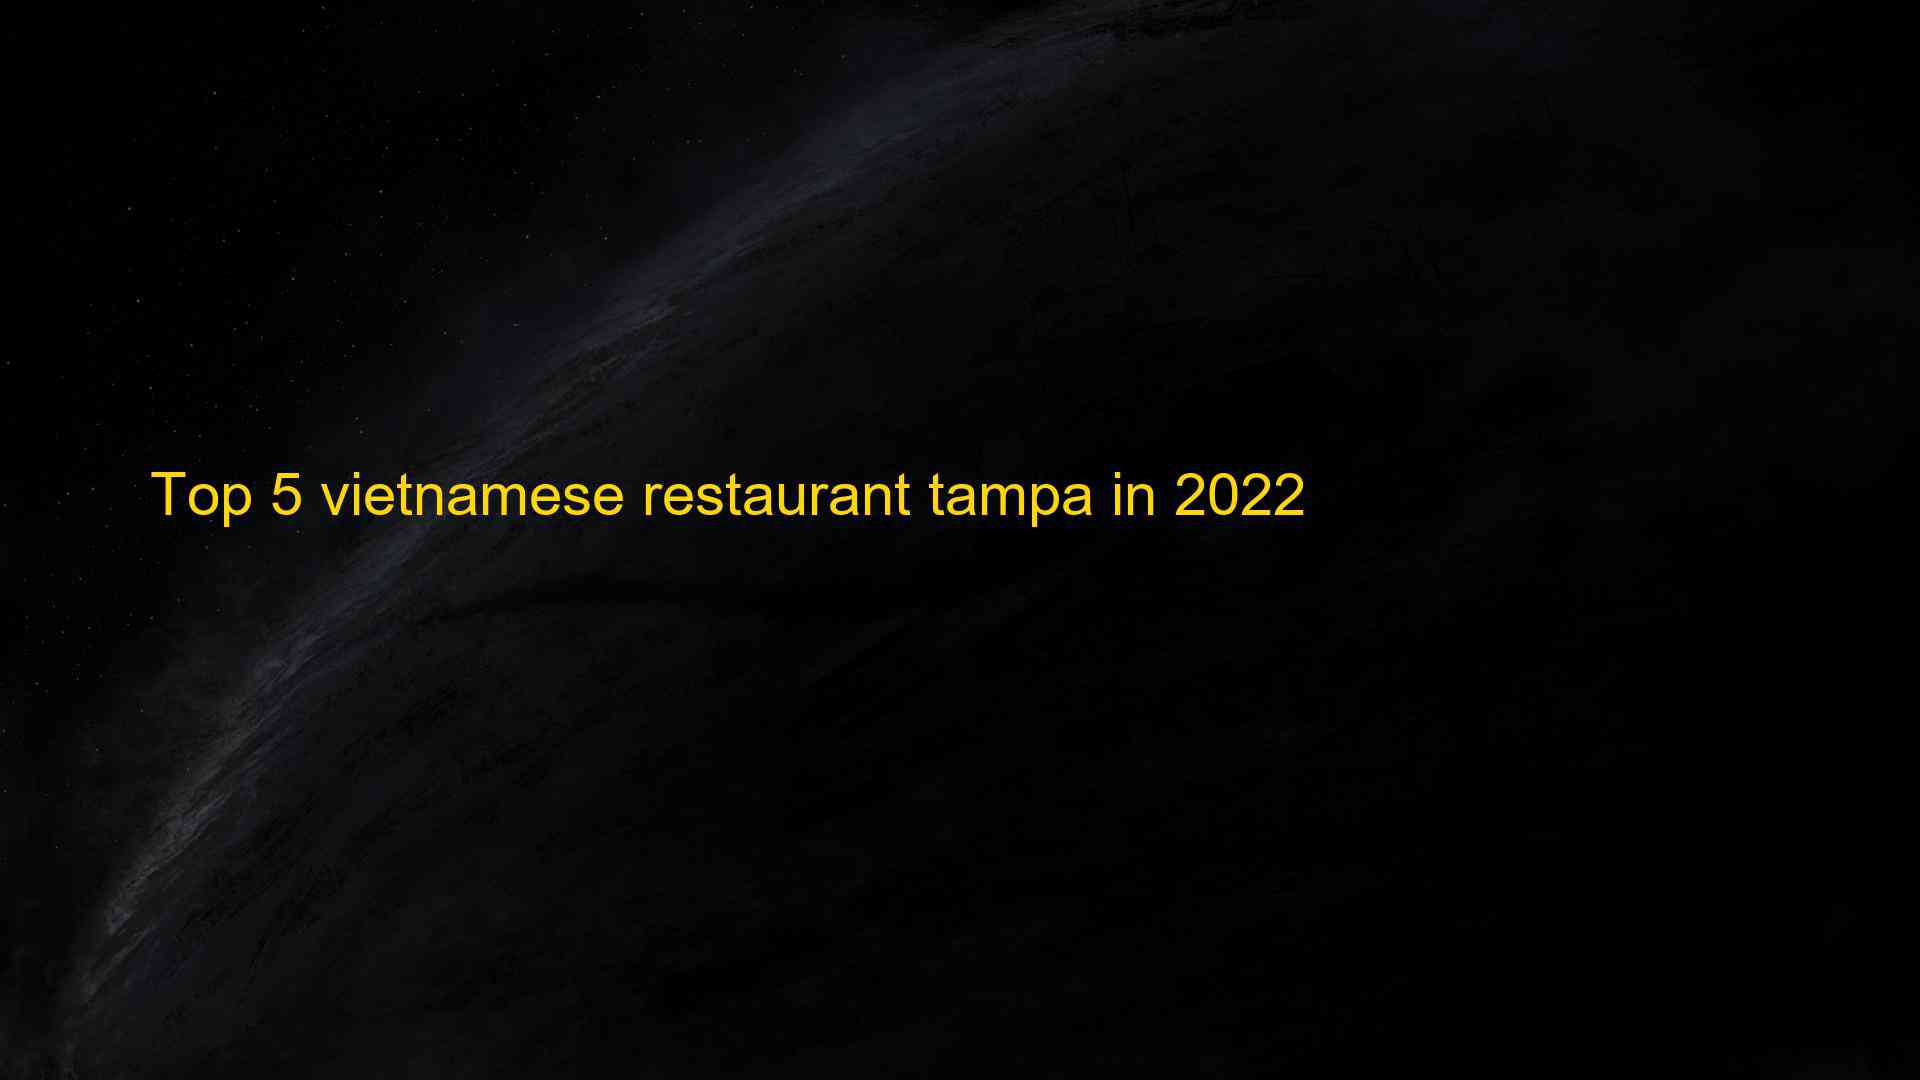 Top 5 vietnamese restaurant tampa in 2022 1663511418